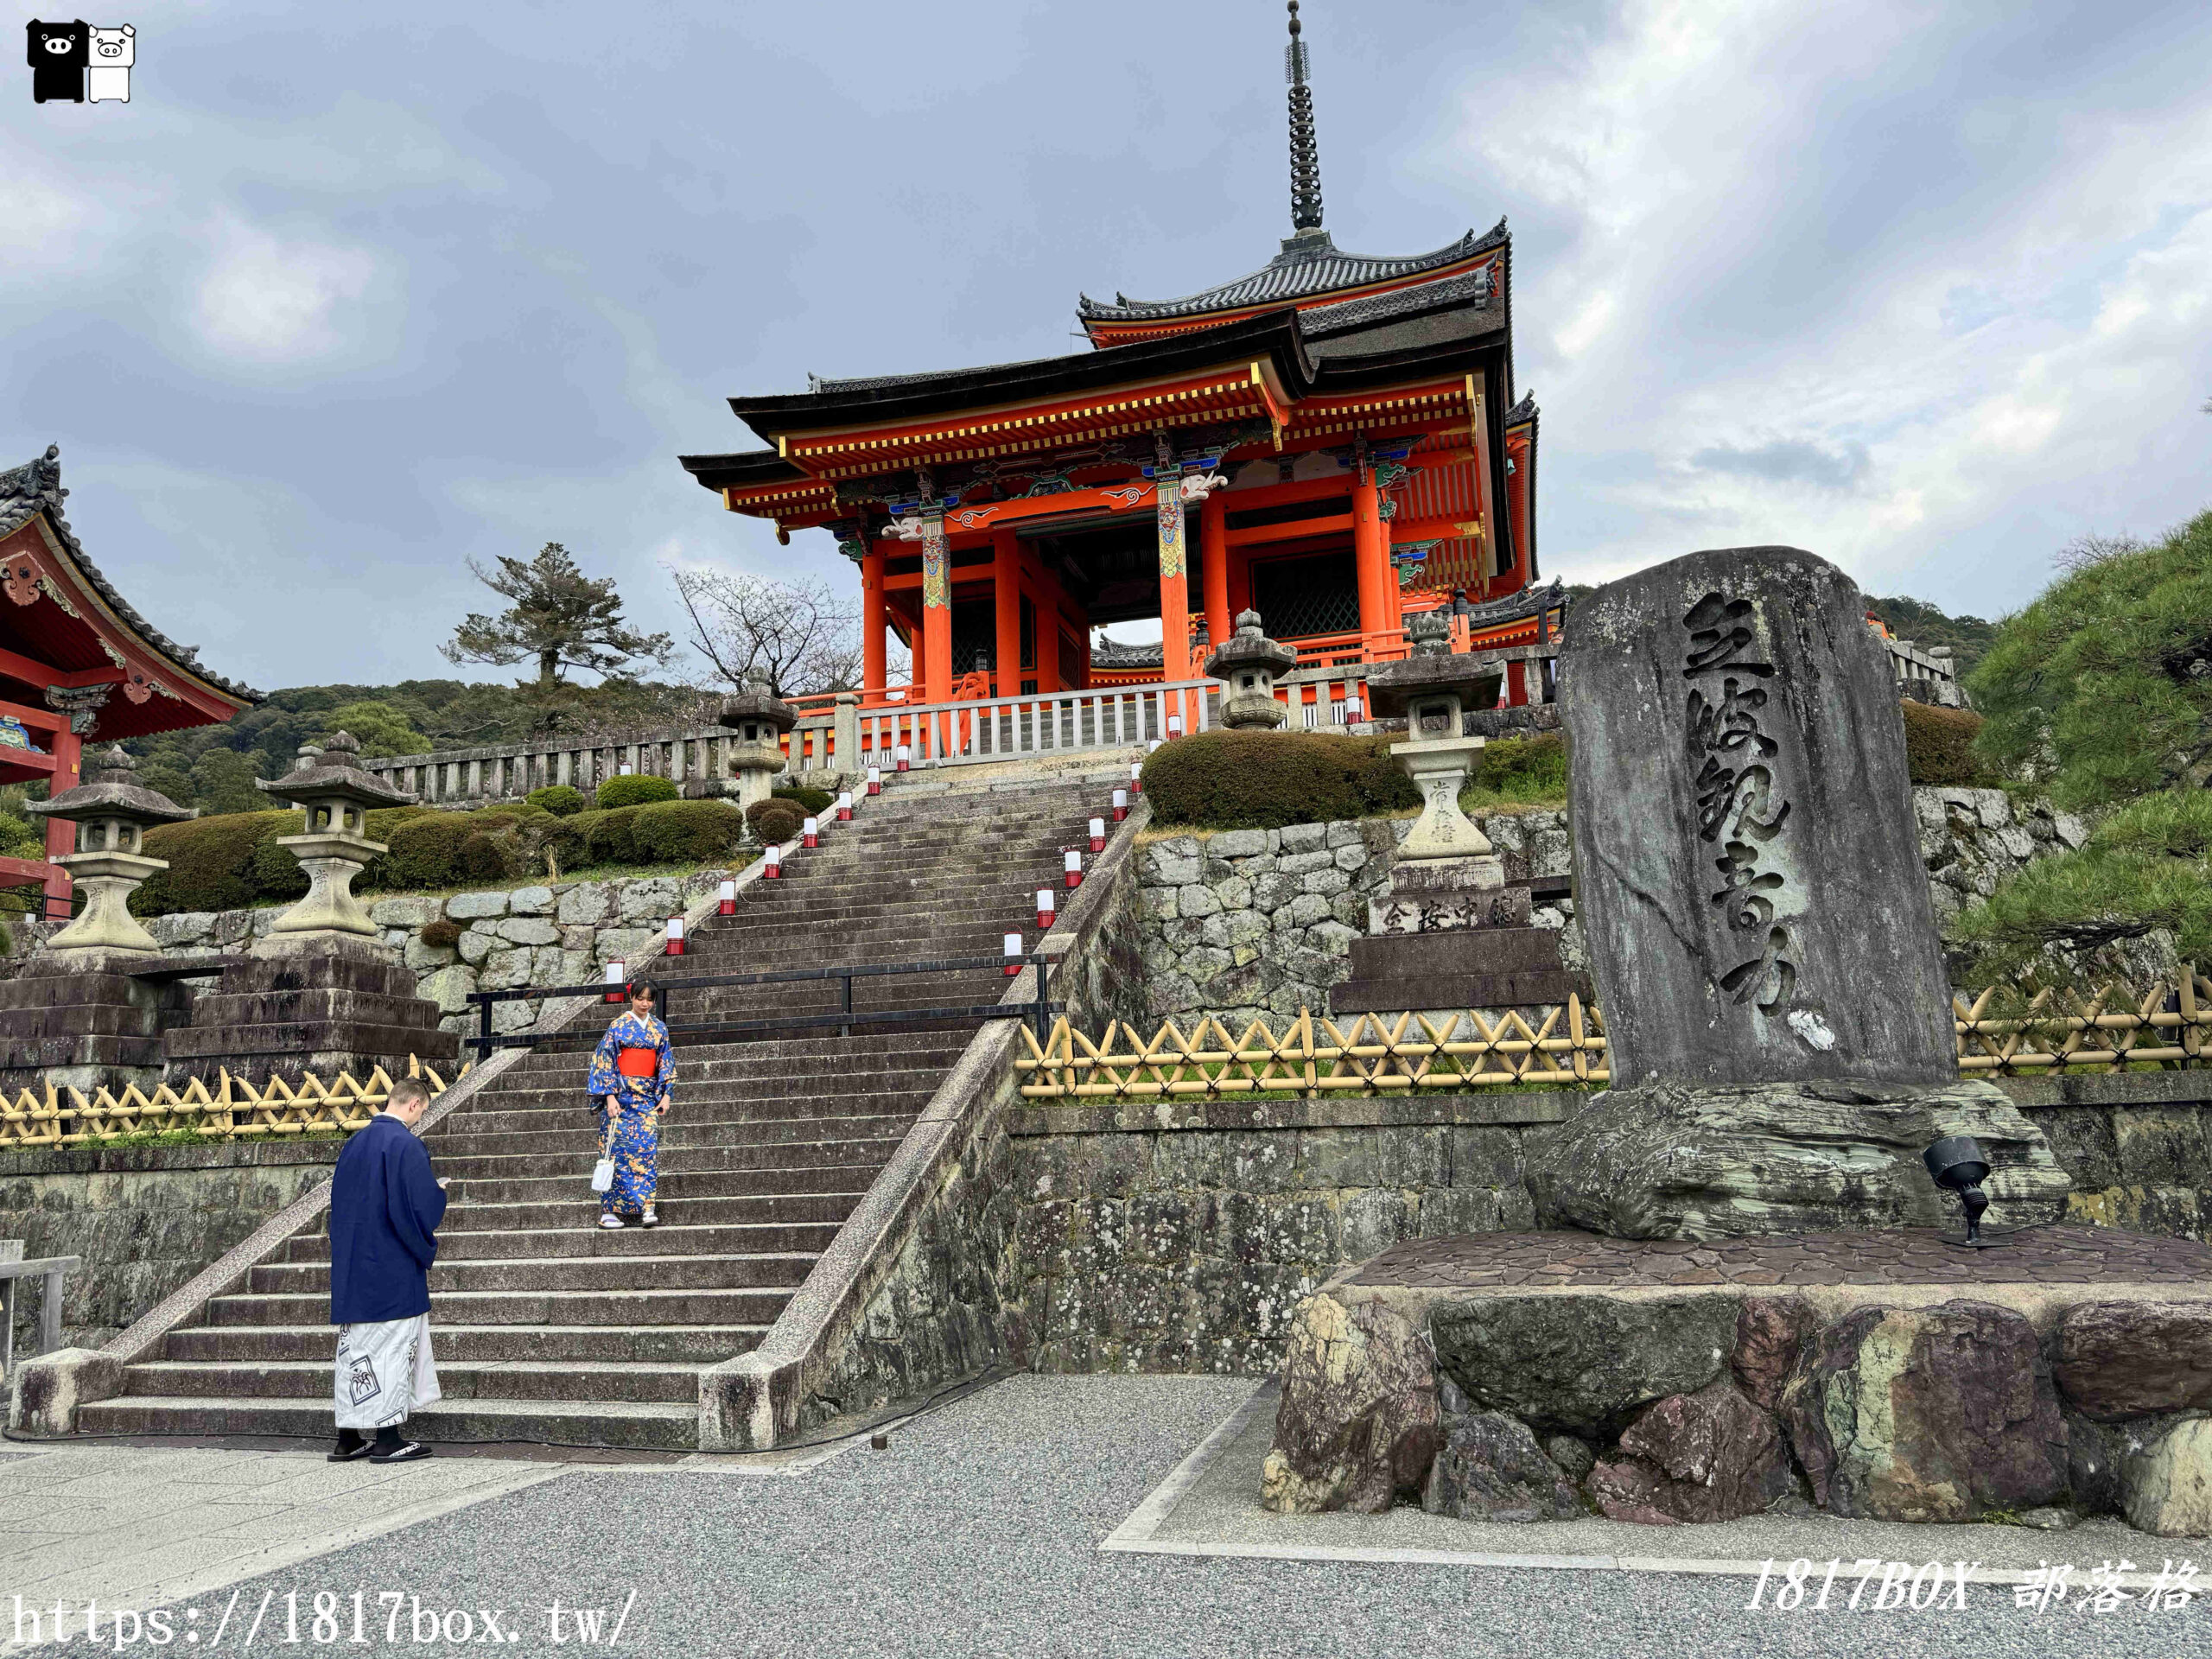 【京都景點】音羽山清水寺。京都第一名所。京都人氣景點。京都必遊景點